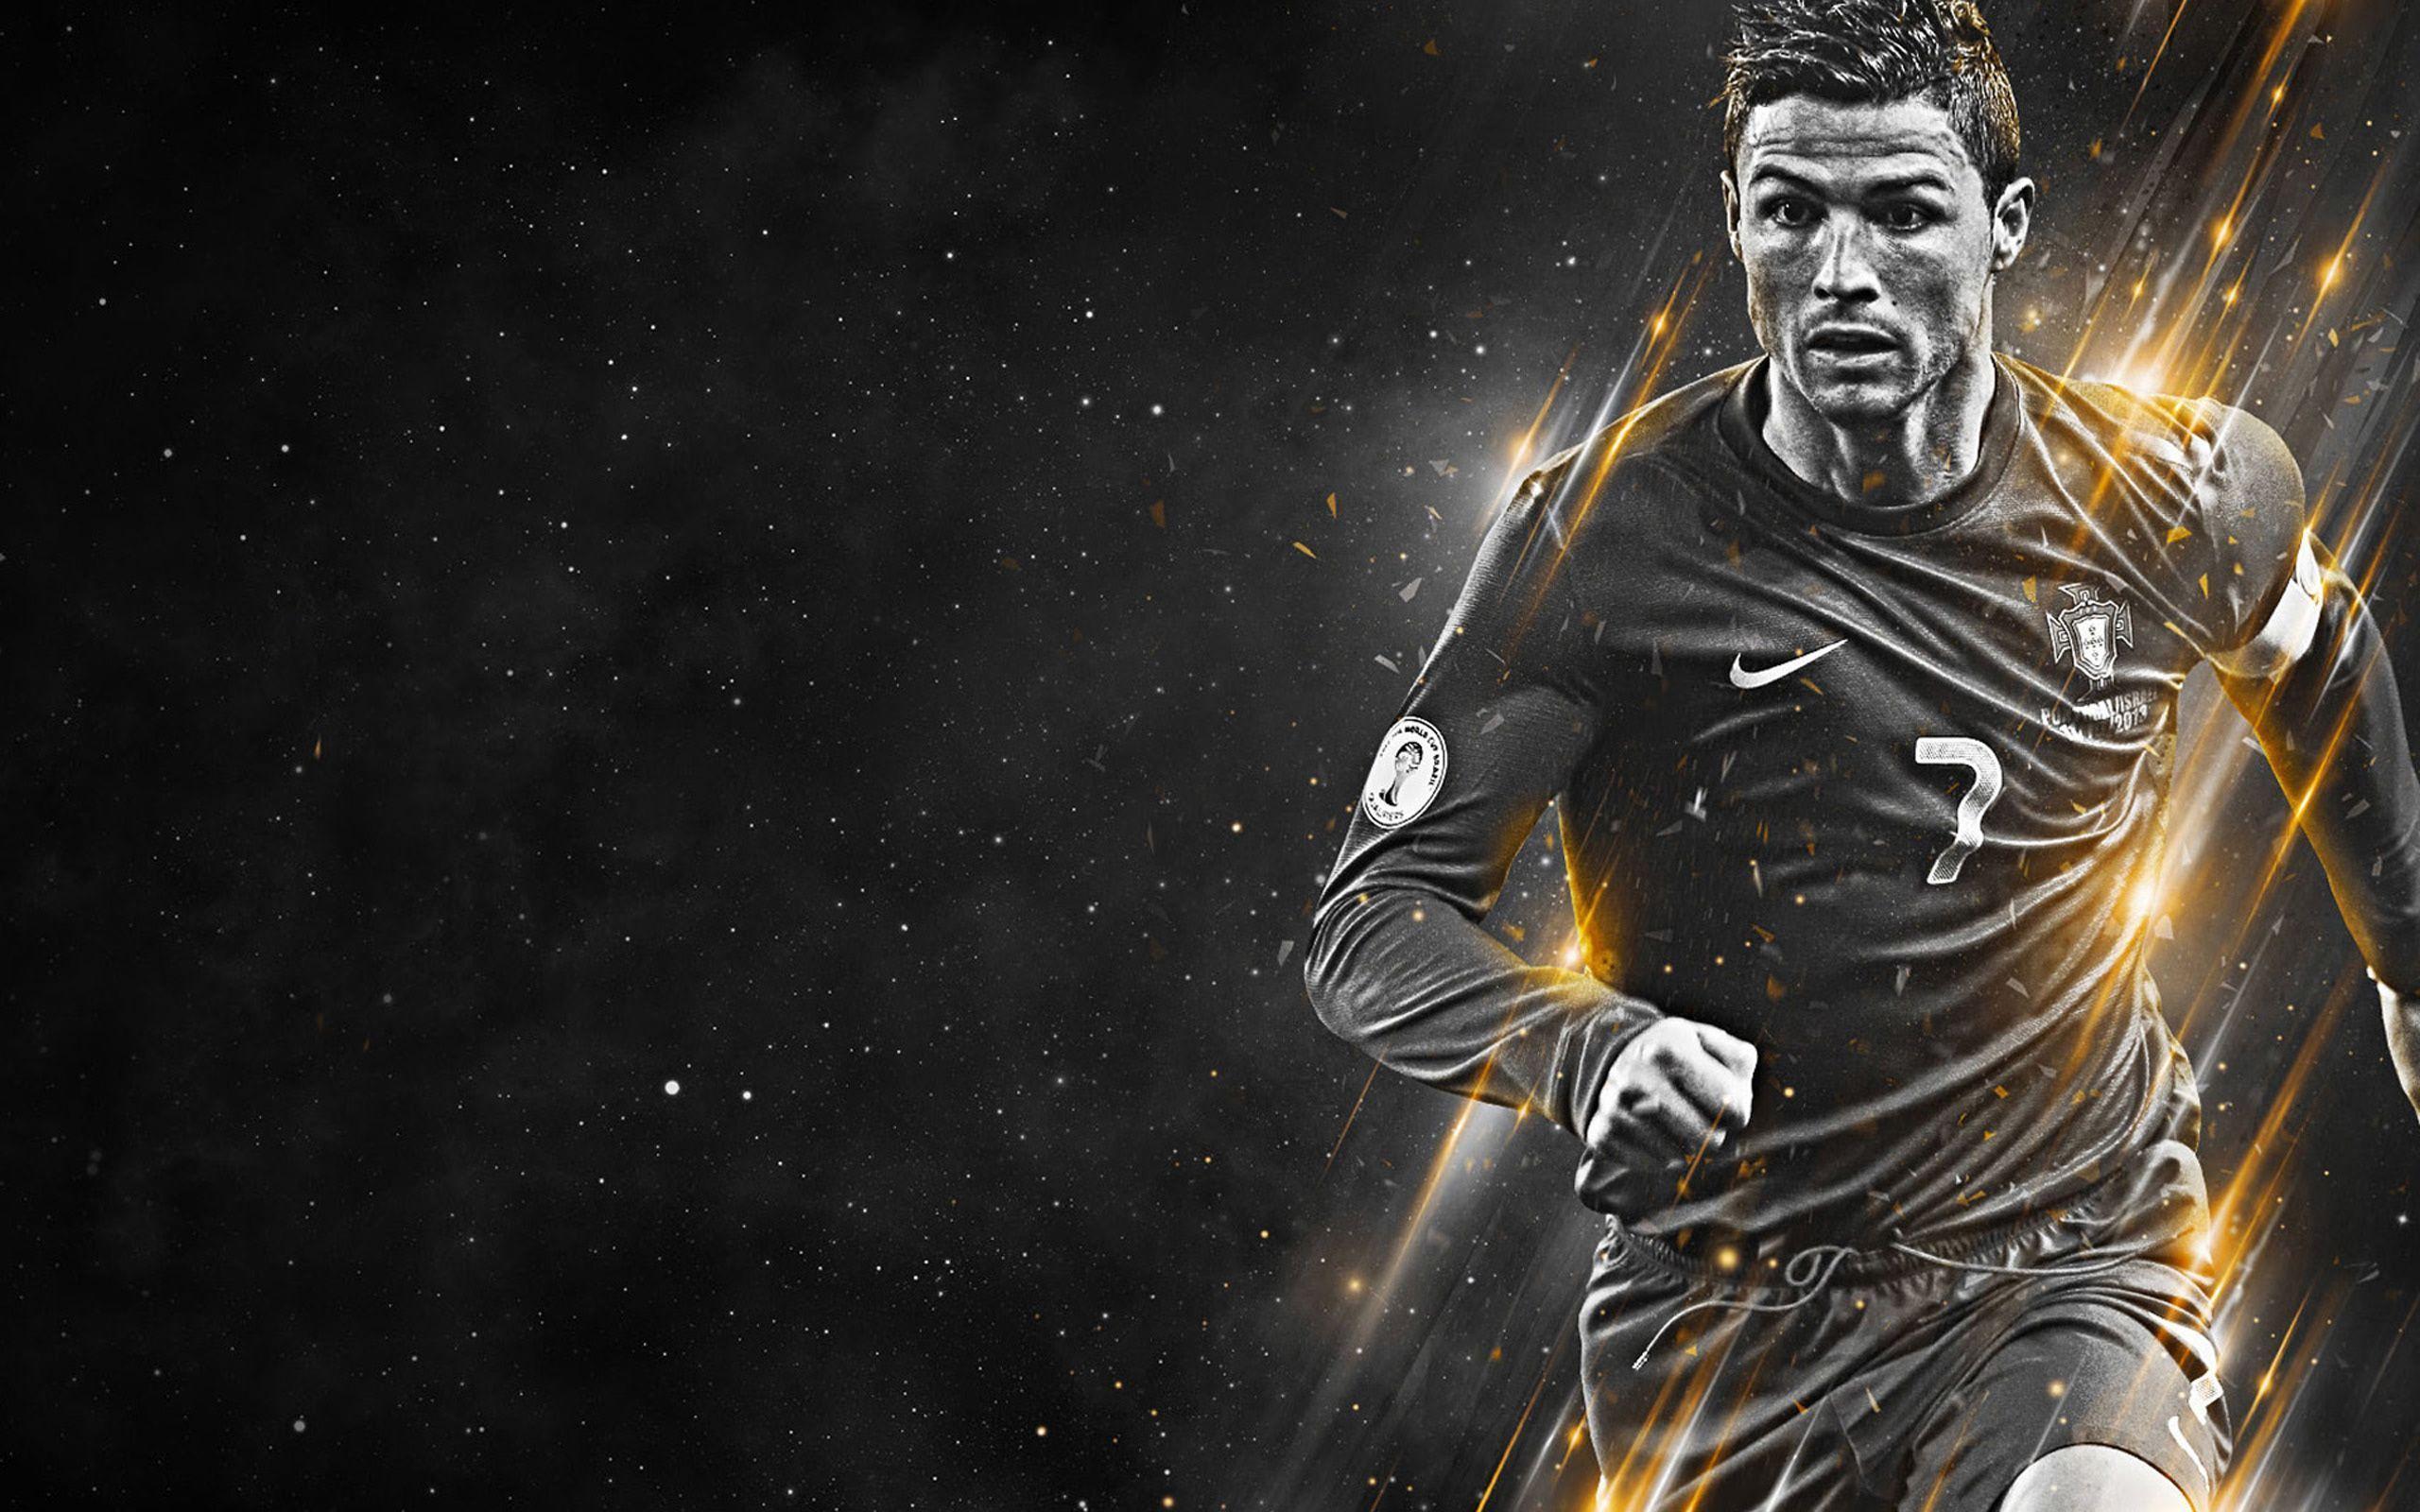 Cristiano Ronaldo 7 Wallpaper 2015